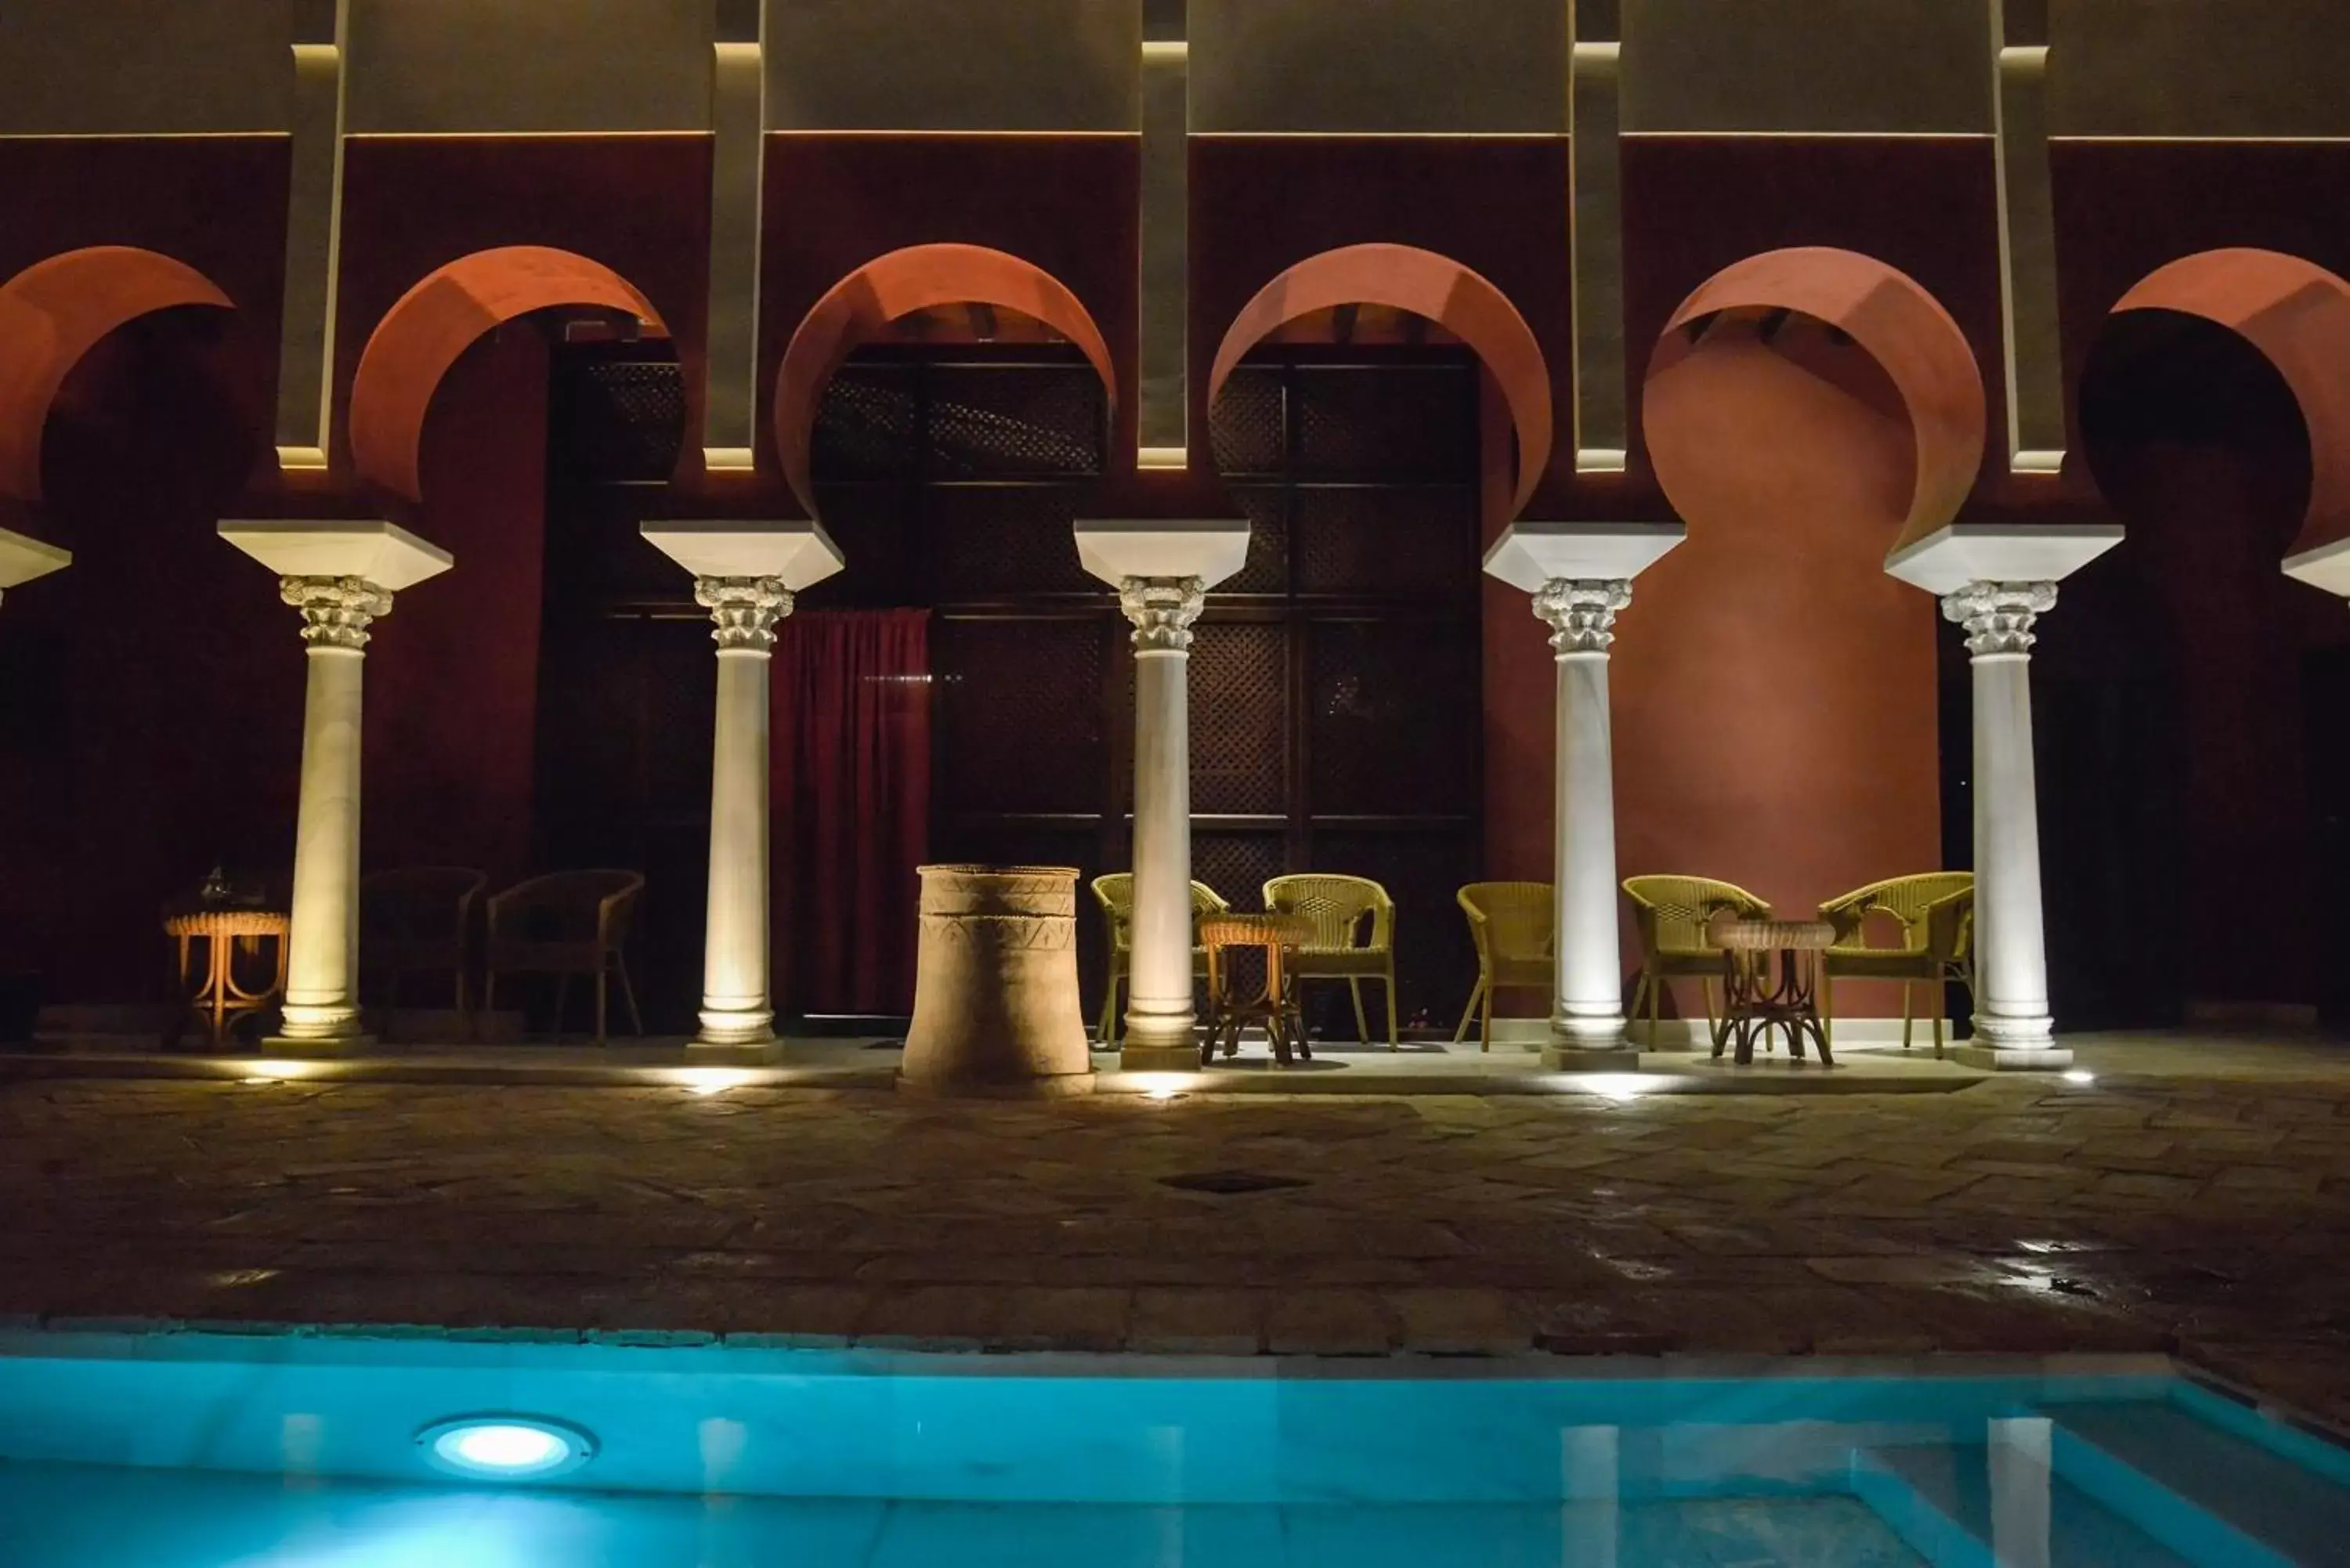 Hot Spring Bath, Swimming Pool in Hospedería Baños Arabes de Córdoba Dos